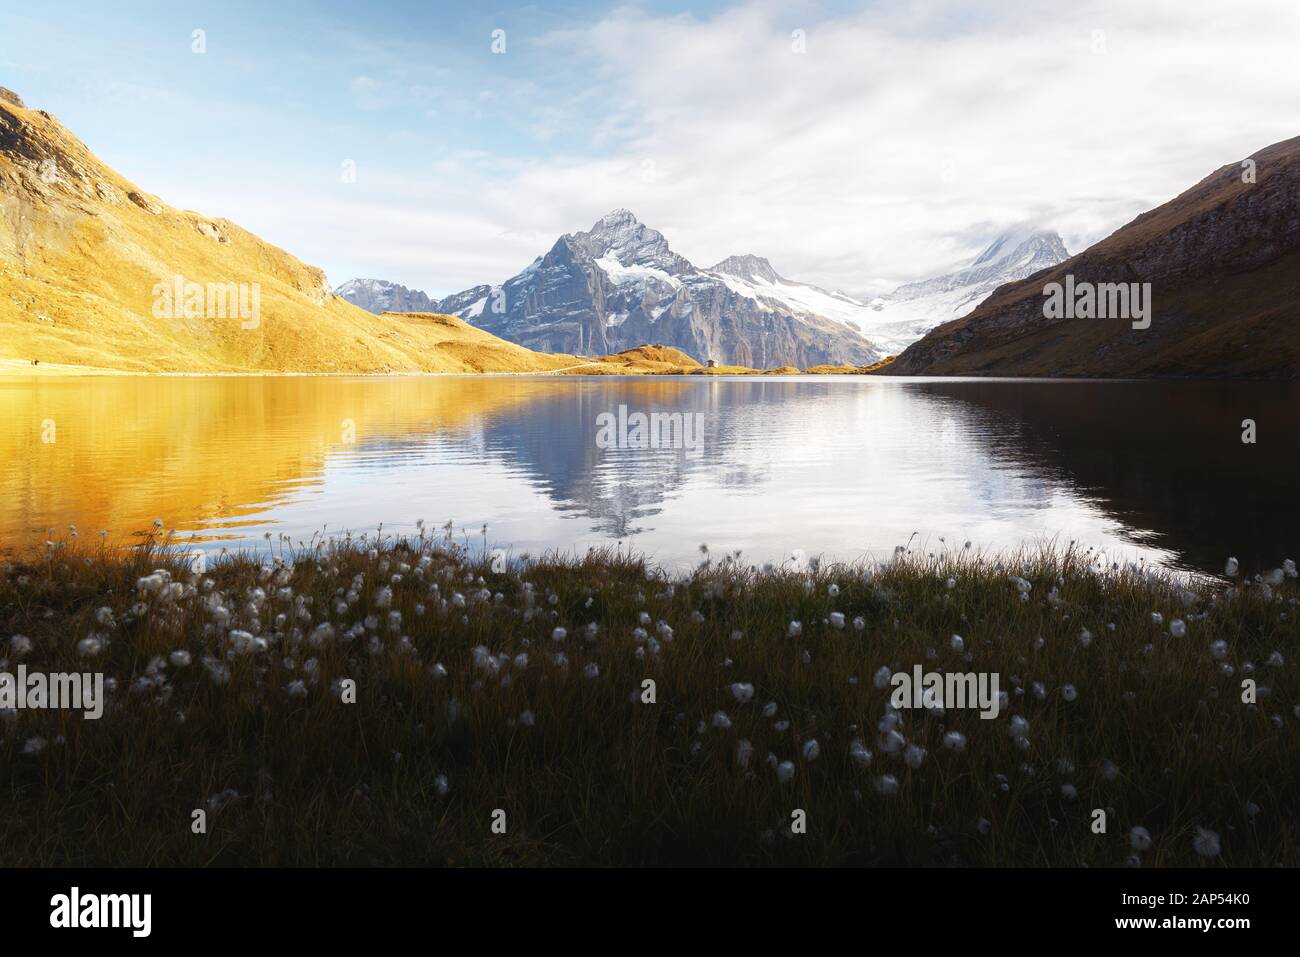 Vue pittoresque sur les Alpes Suisses dans le lac de Bachalp montagnes. Floraison de fleurs blanches sur un premier plan. La vallée de Grindelwald, Suisse. Photographie de paysage Banque D'Images